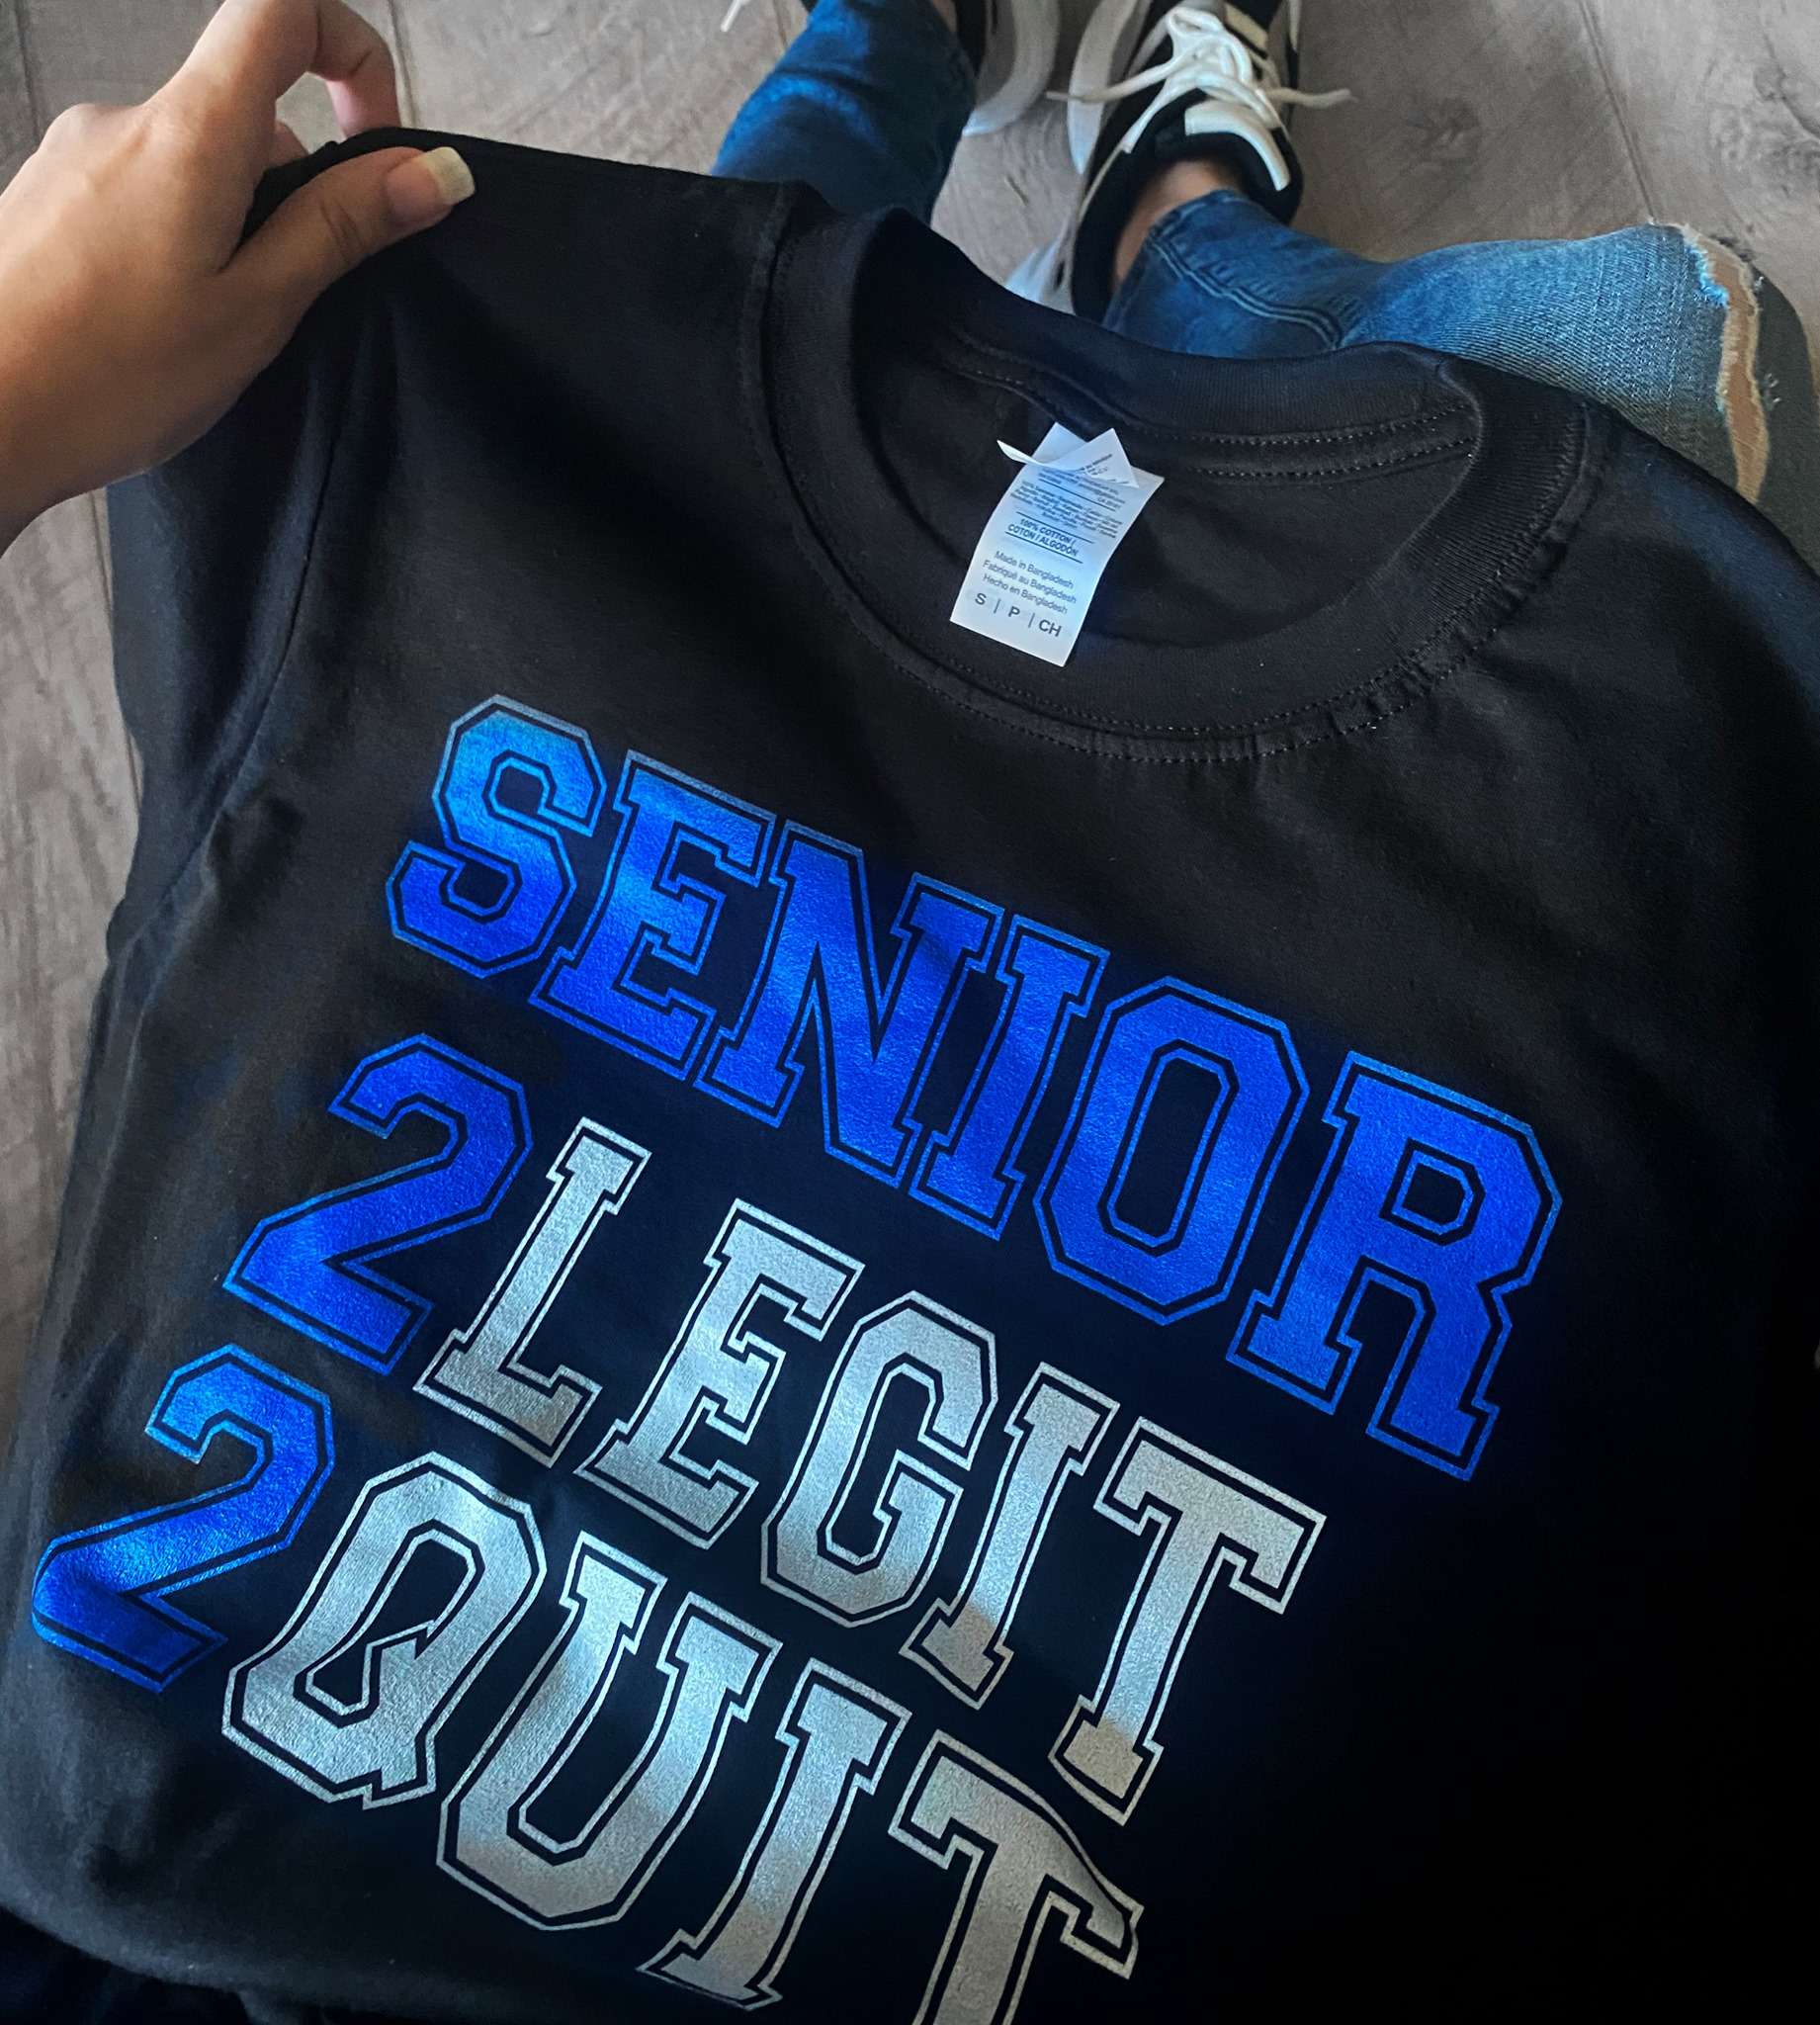 Senior 2022 - Legit quit, Student of 2022